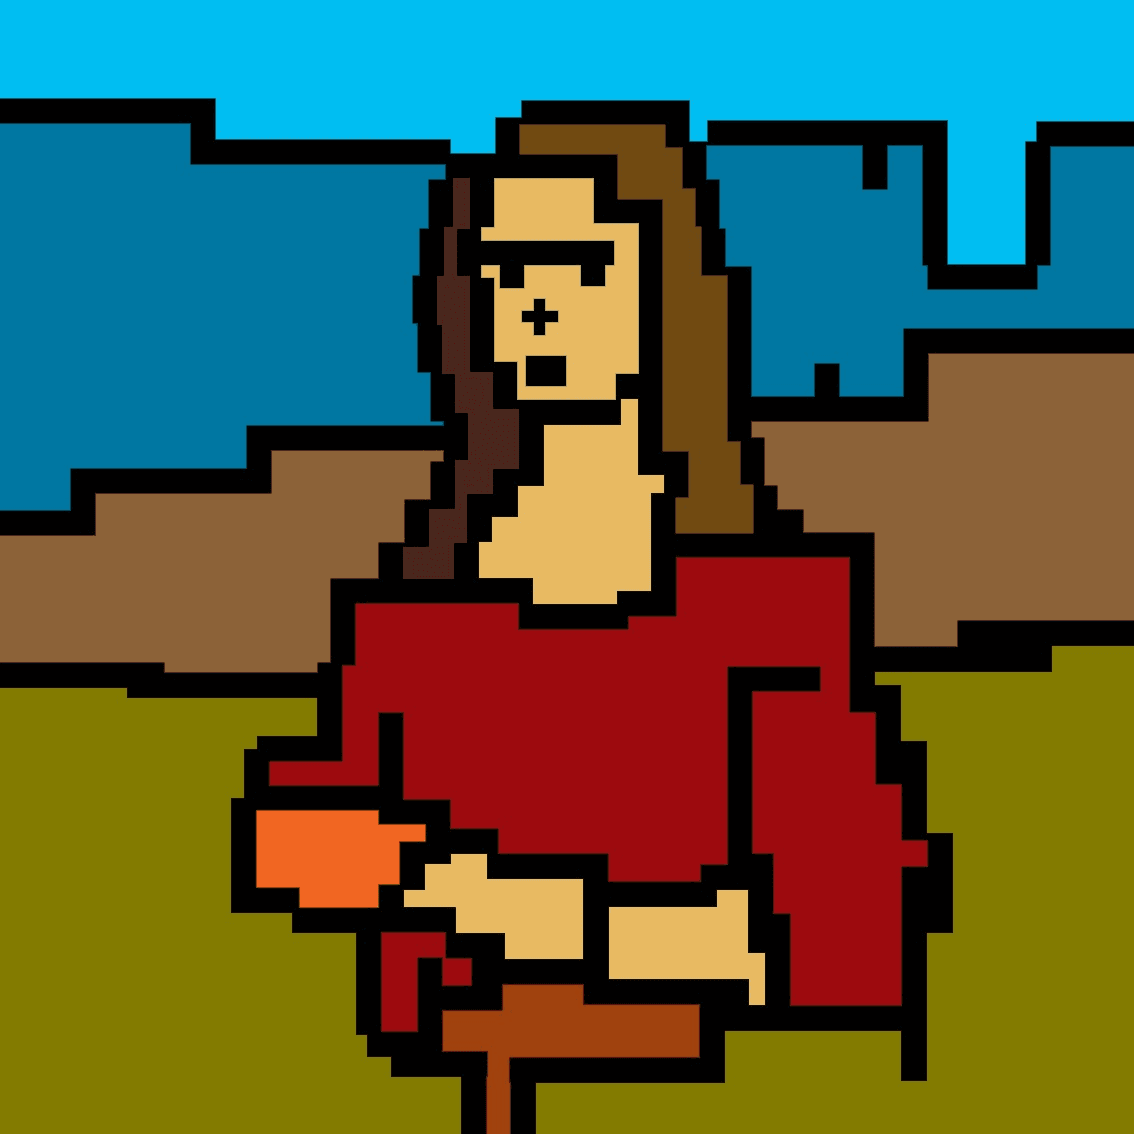 The Mona Crypto Lisa #03